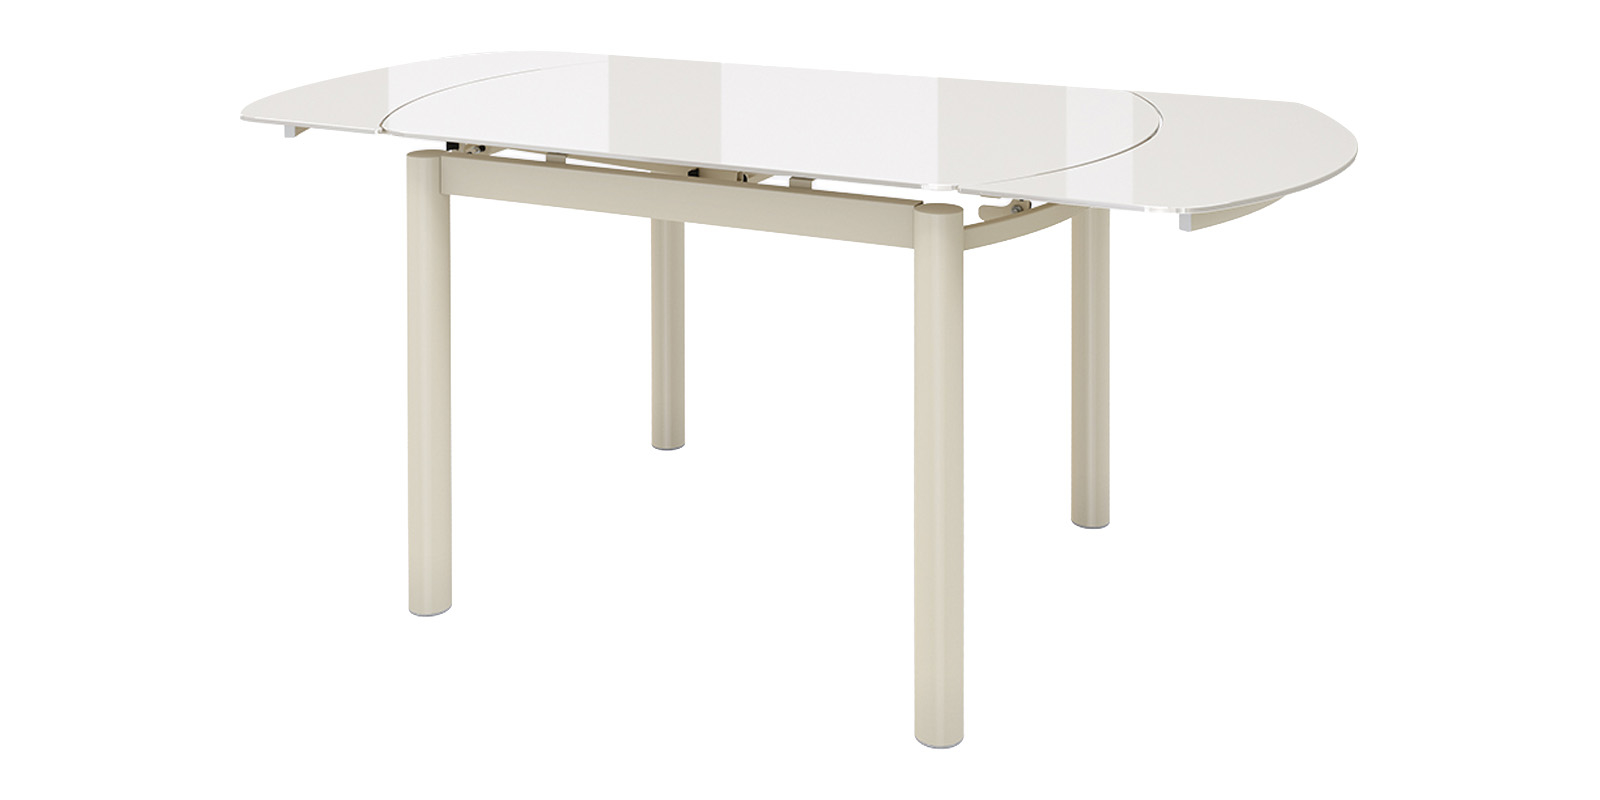 Римс стол раздвижной со стеклом 105(155)х74, кремовый/кремовый